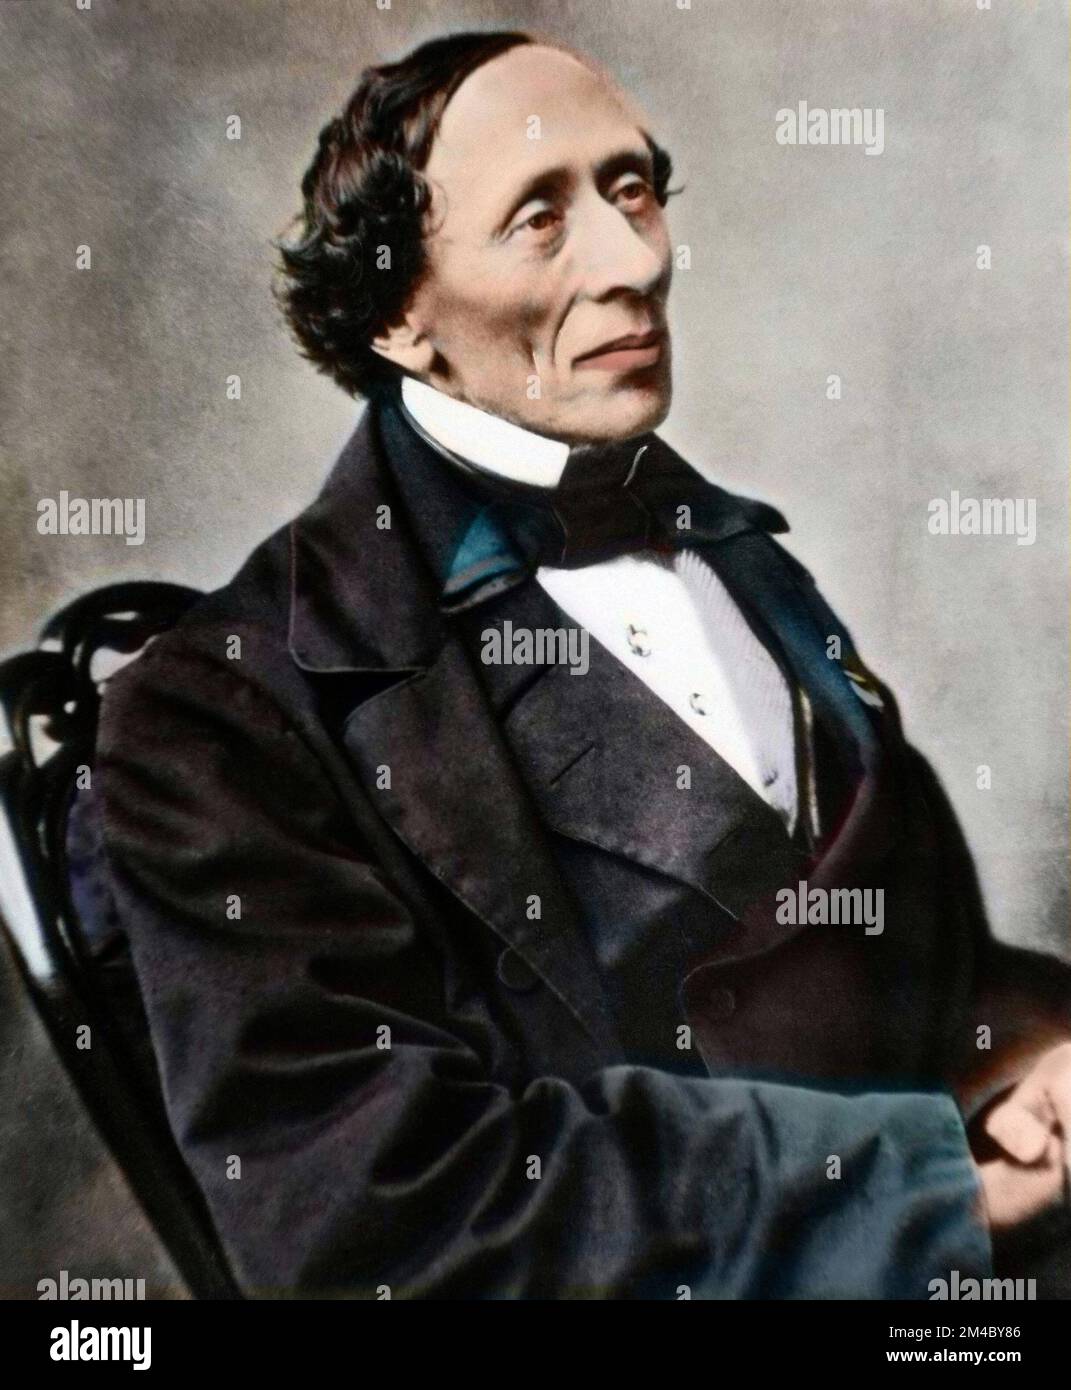 Portrait de l'ecrivain et poete danois Hans Christian Andersen (1805-1875). foto colorié ultérieuement Foto Stock